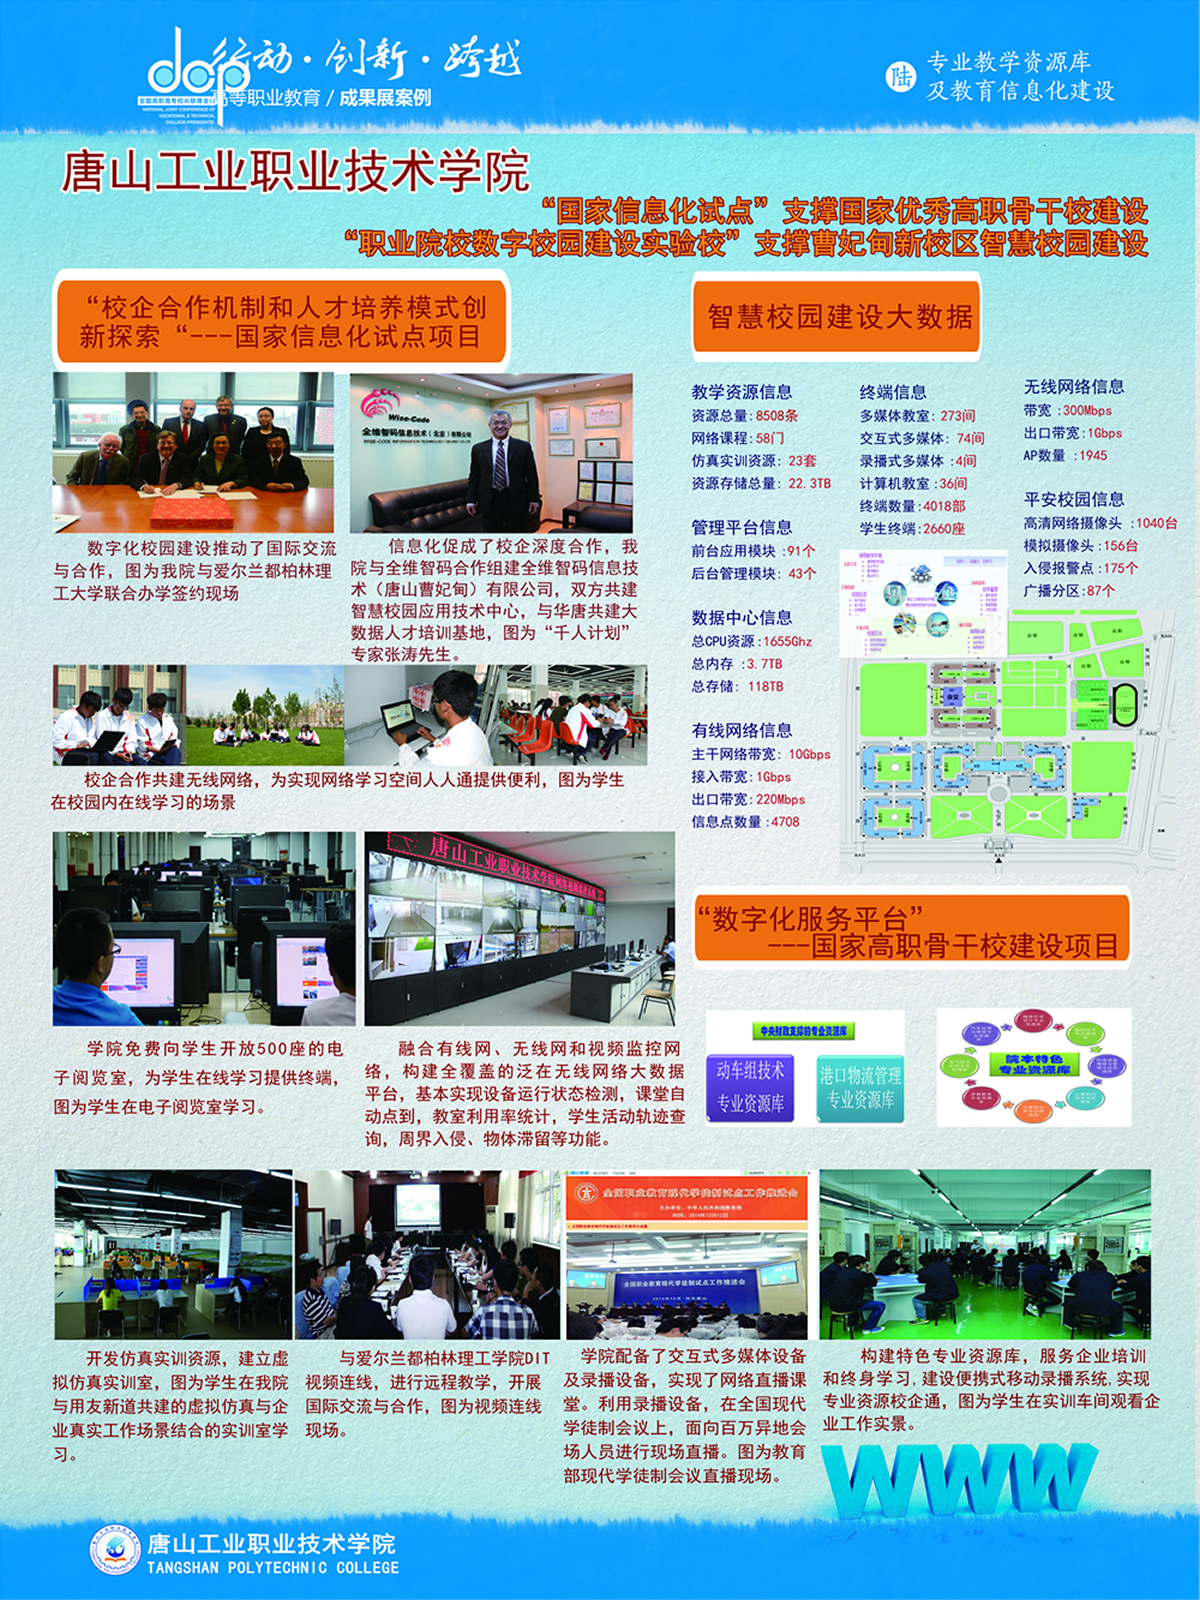 唐山工业职业技术学院+宣传展板+信息化建设++用这个.jpg